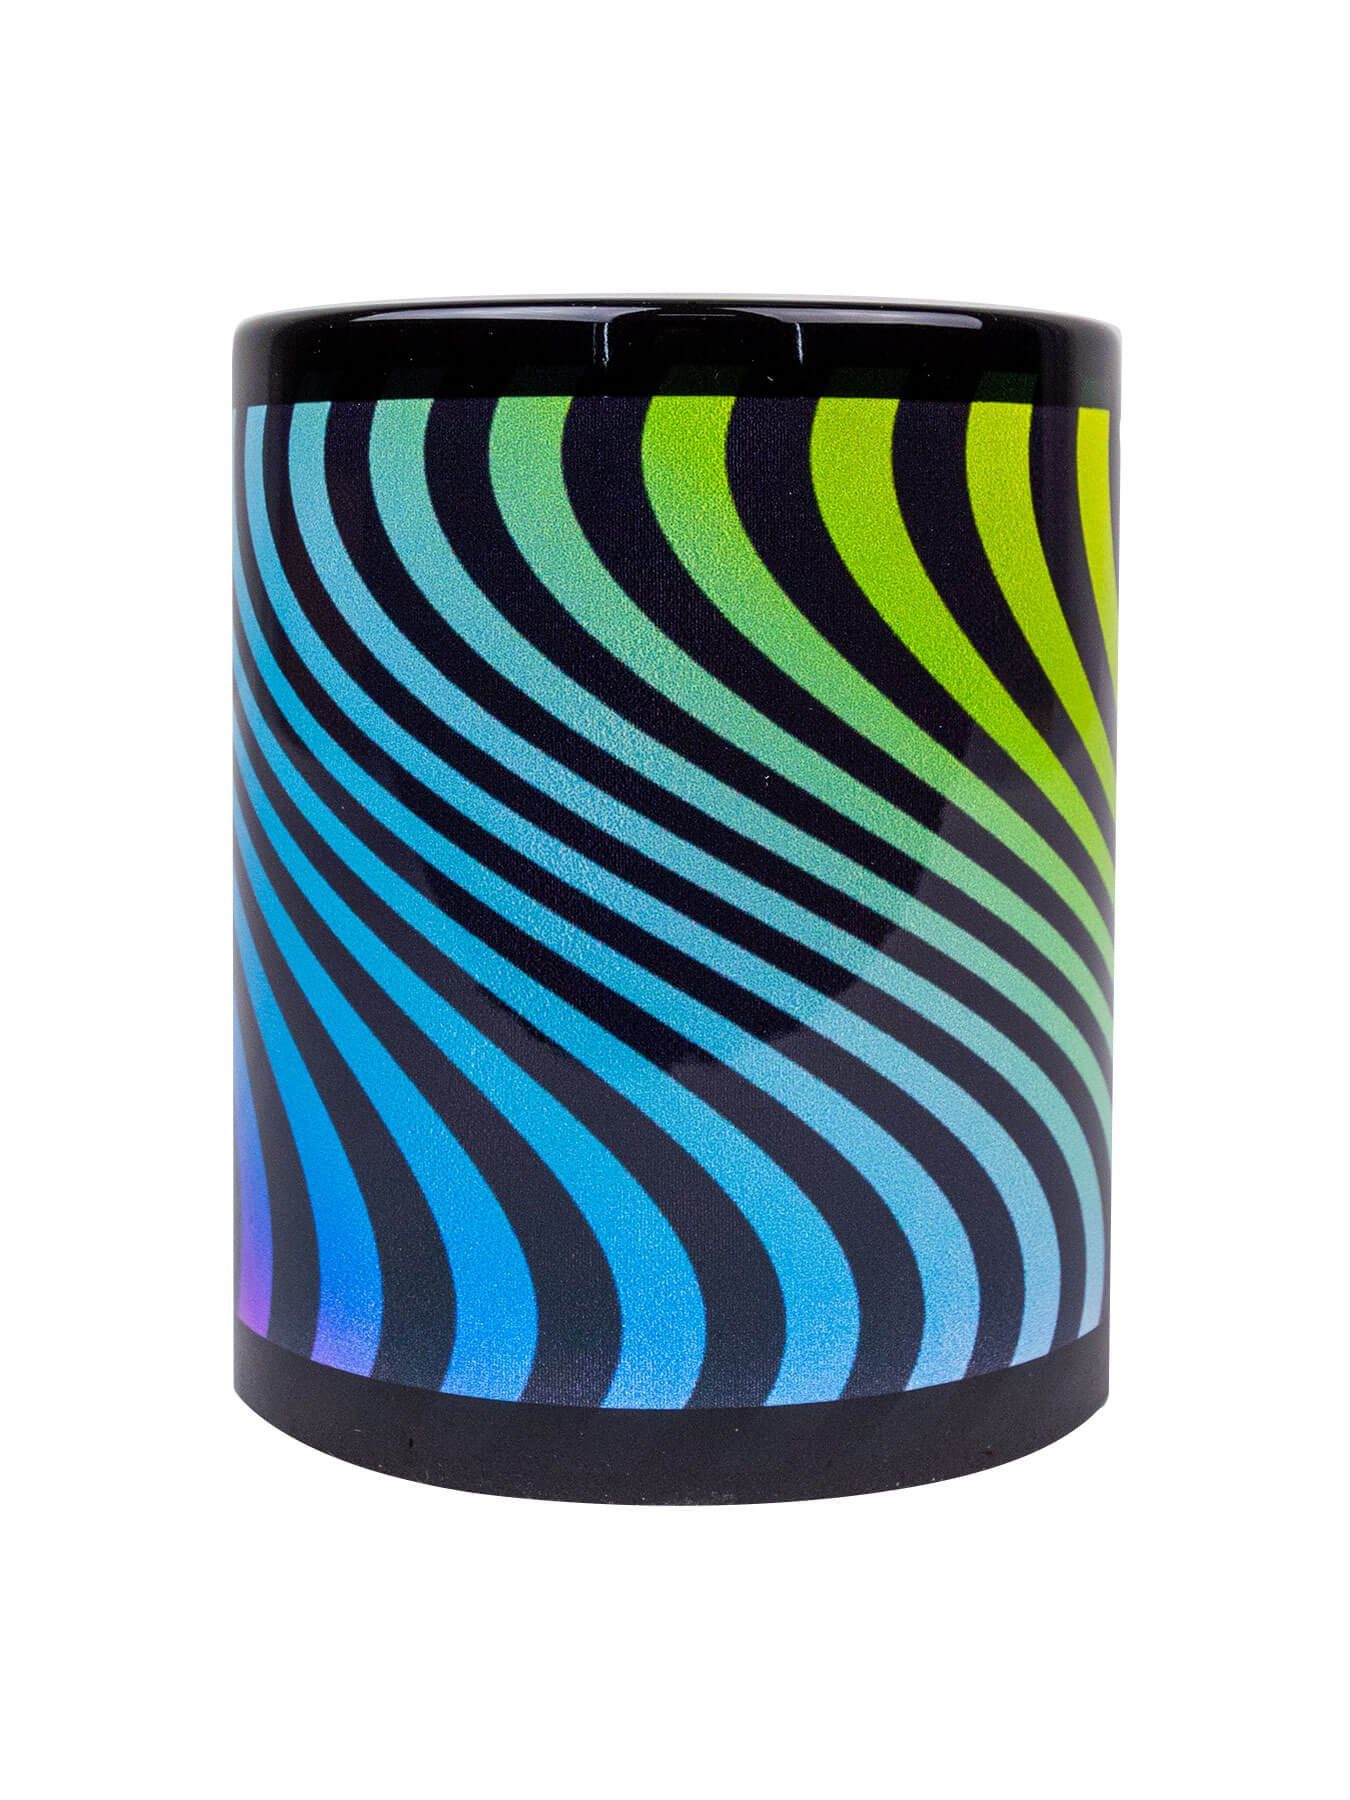 Tasse leuchtet Tasse Neon Waves", "Neon Fluo Motiv Cup Keramik, PSYWORK Schwarzlicht unter UV-aktiv,